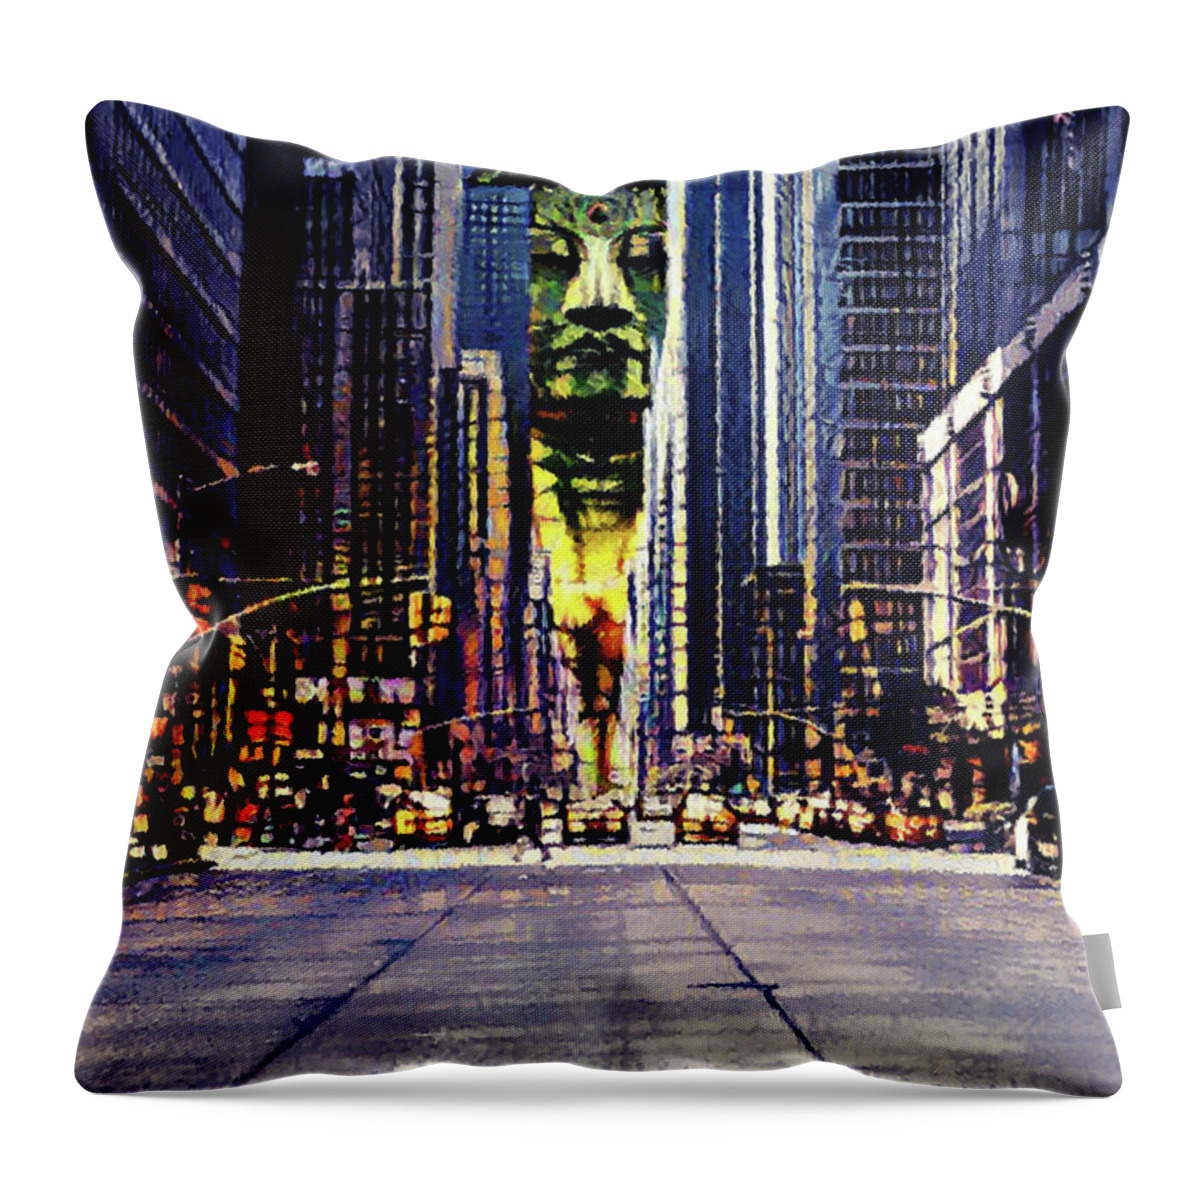 Zen Throw Pillow featuring the digital art Buddha by Alex Mir